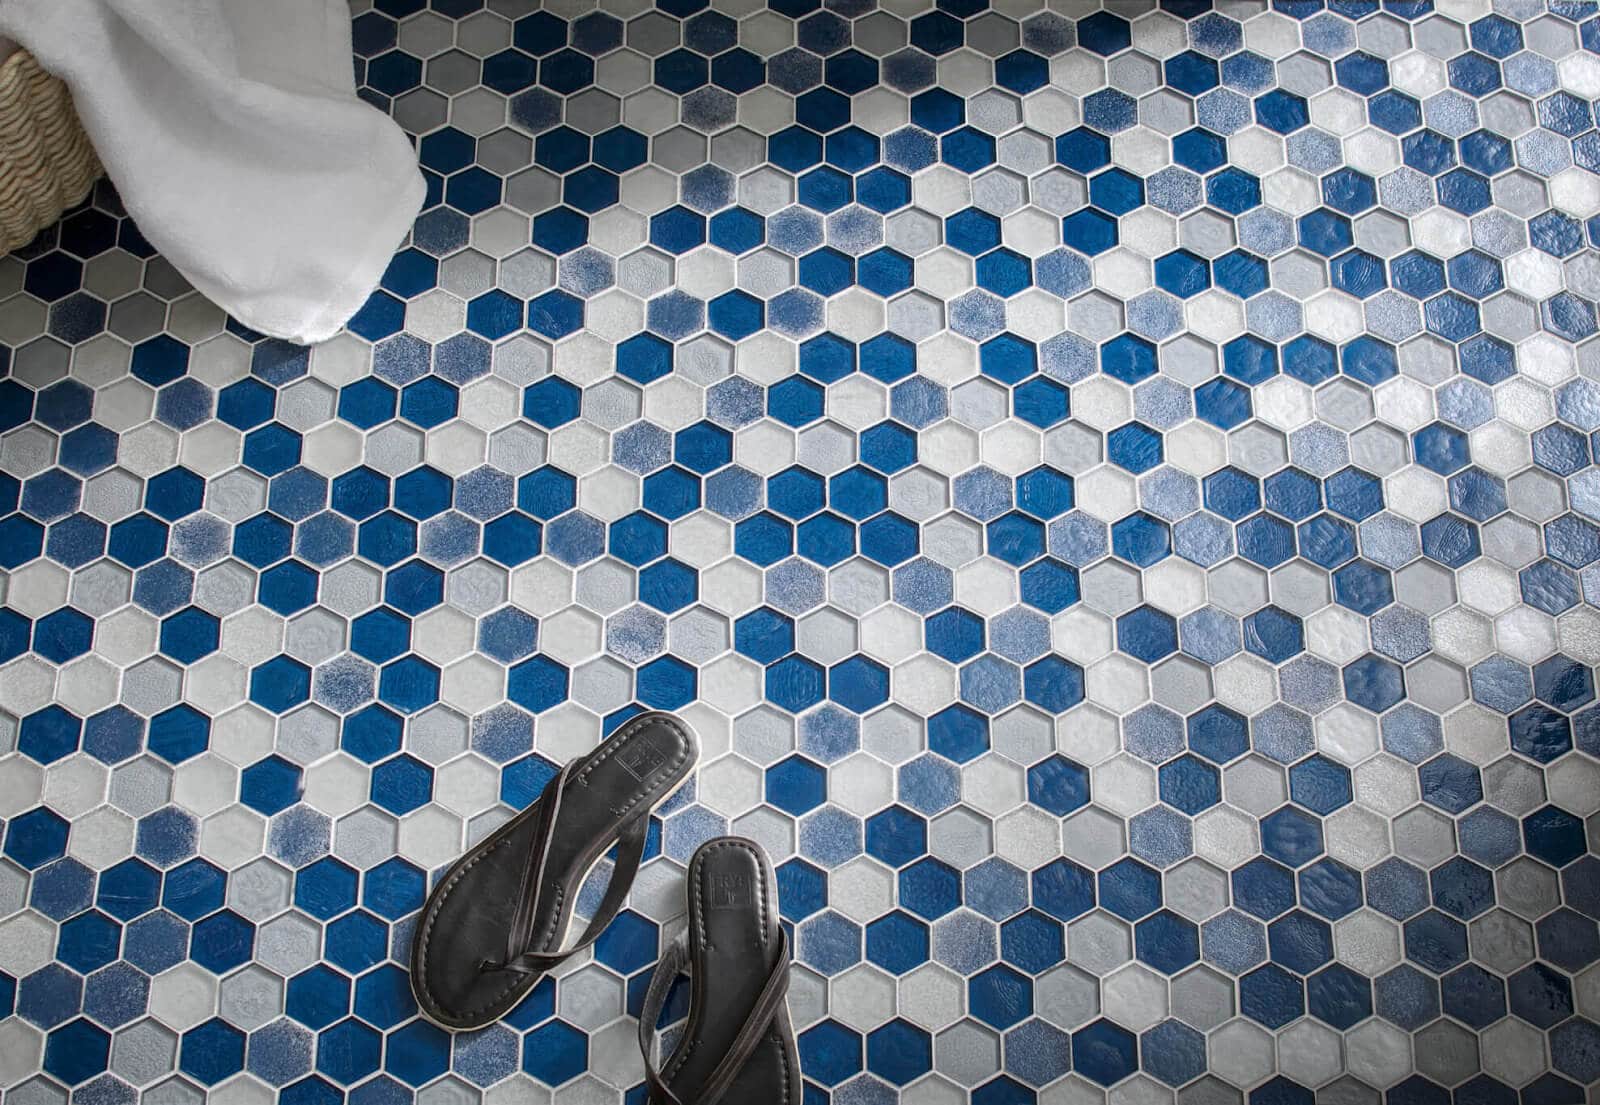 Bathroom multicolored tile flooring